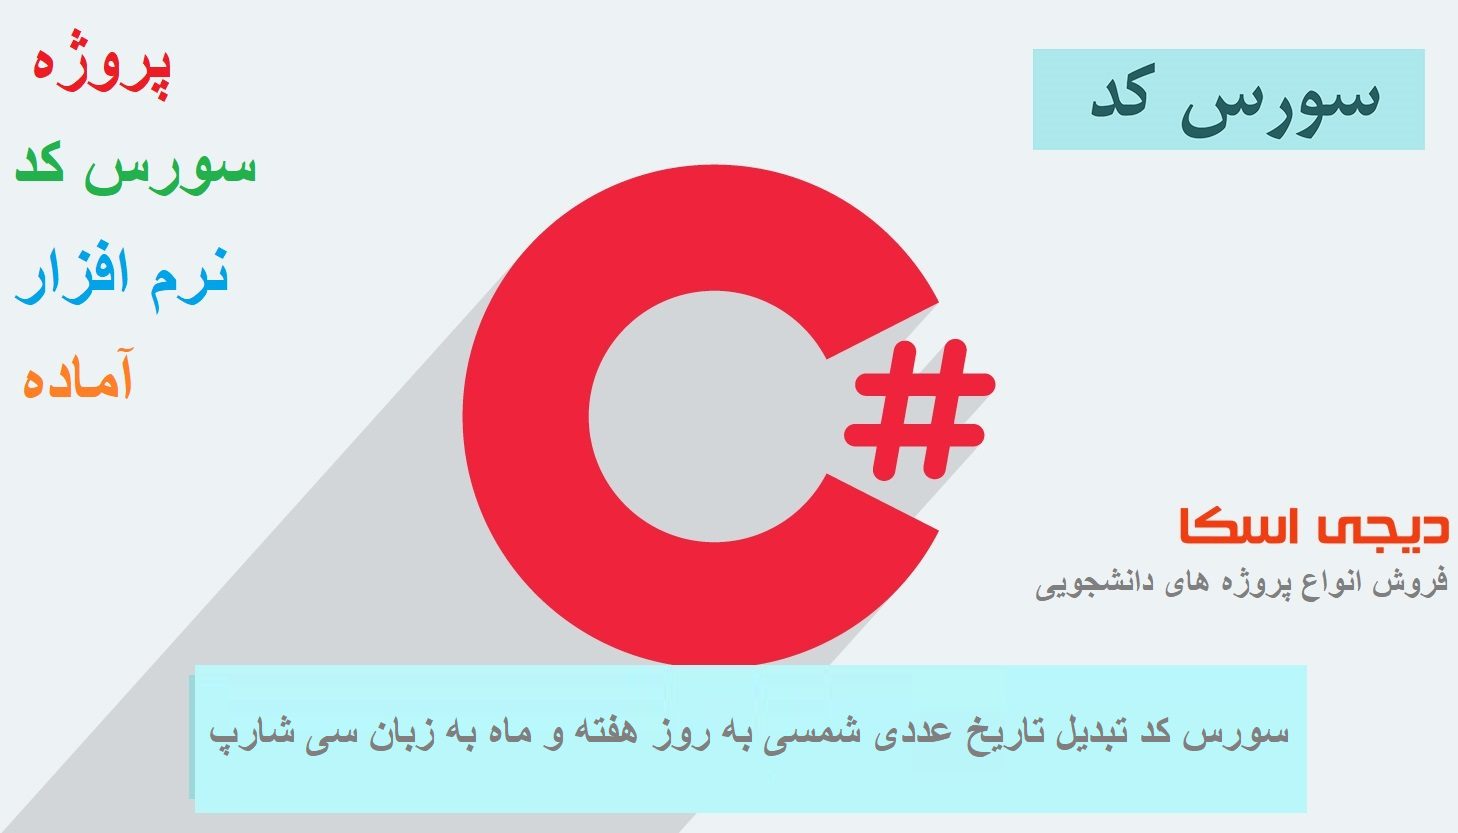 سورس کد تبدیل تاریخ عددی شمسی به روز هفته و ماه به زبان سی شارپ #c